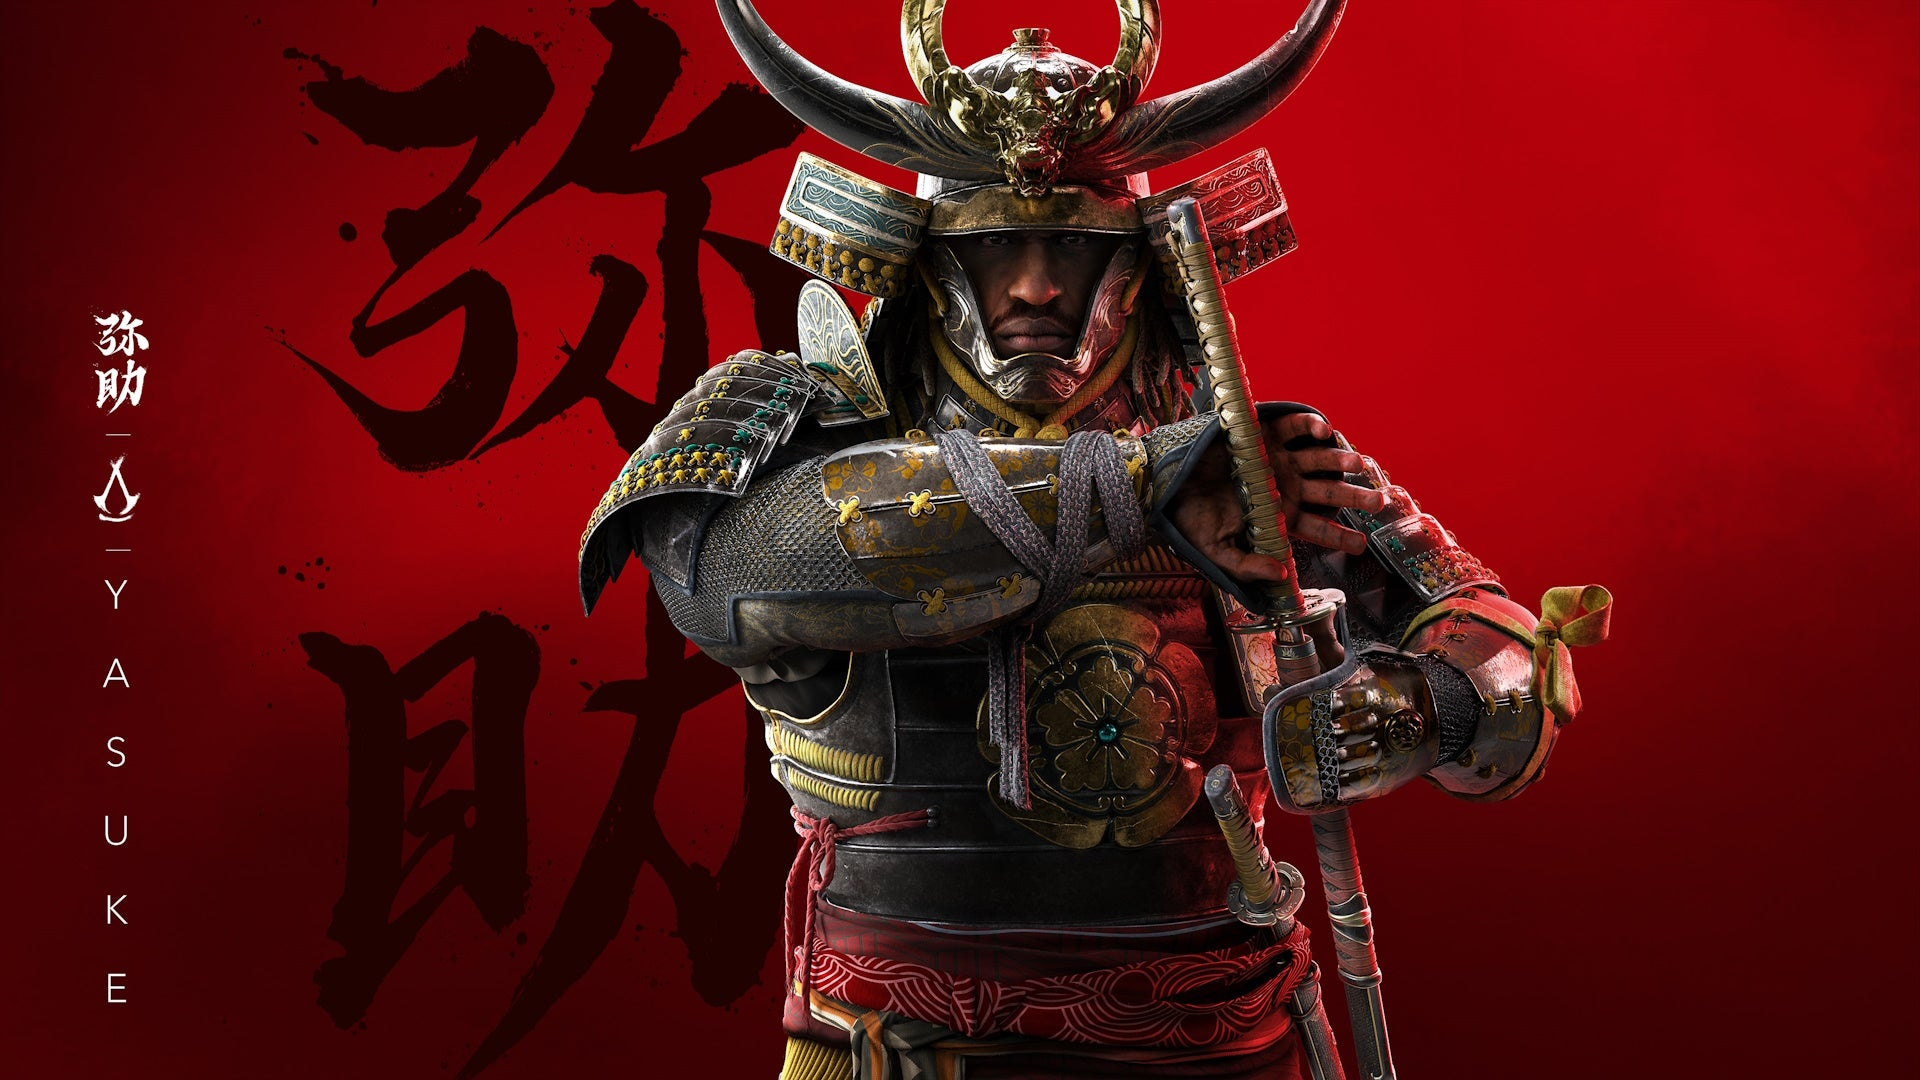 Trở thành Samurai  Nobunaga đã quyết định thu nhận Yasuke vào hàng ngũ của mình. Yasuke được phong tước samurai, một vinh dự hiếm có đối với người nước ngoài vào thời điểm đó. Ông được cấp đất và cho phép mang vũ khí, bao gồm cả kiếm katana – biểu tượng của một samurai thực thụ. Yasuke phục vụ dưới quyền Nobunaga và trở thành một trong những người thân cận của ông.